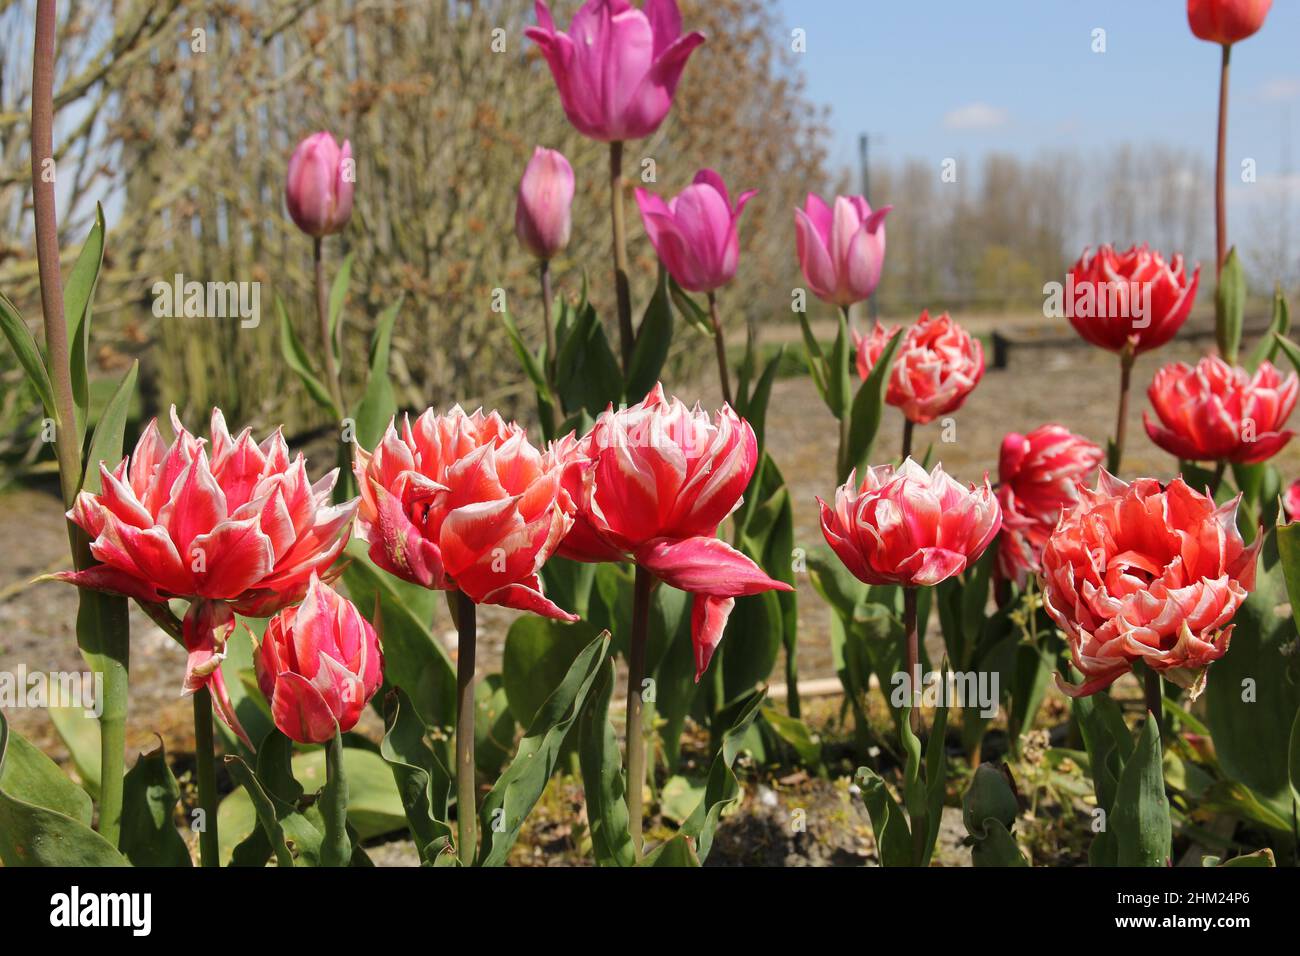 Eine Reihe roter, doppelter Pfingstrosen-Tulpen mit weißen Rändern an den Blättern im Blumengarten in den niederlanden im Frühling Stockfoto